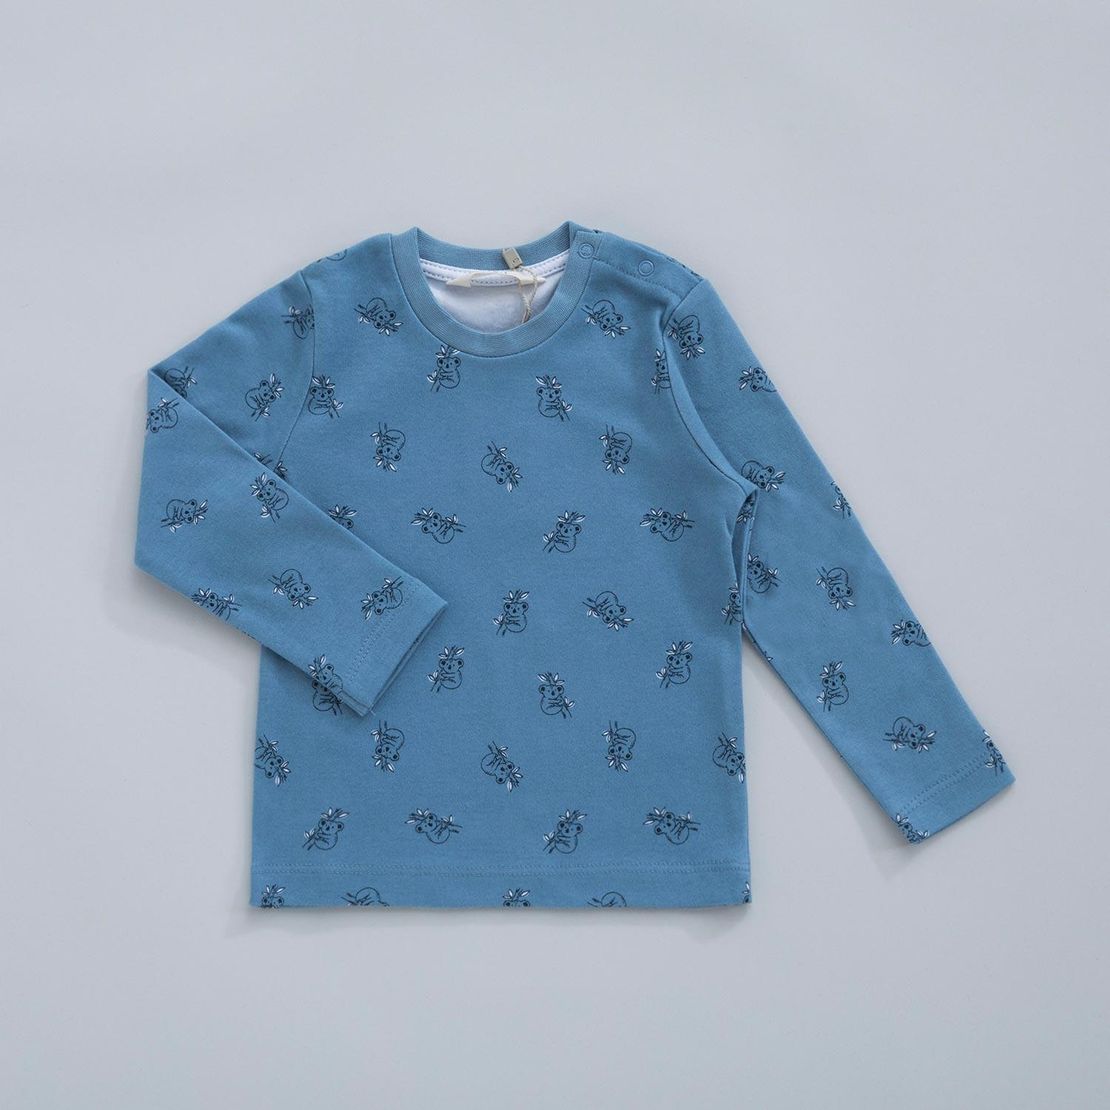 Детская пижама KOALA 5-6 лет, голубая